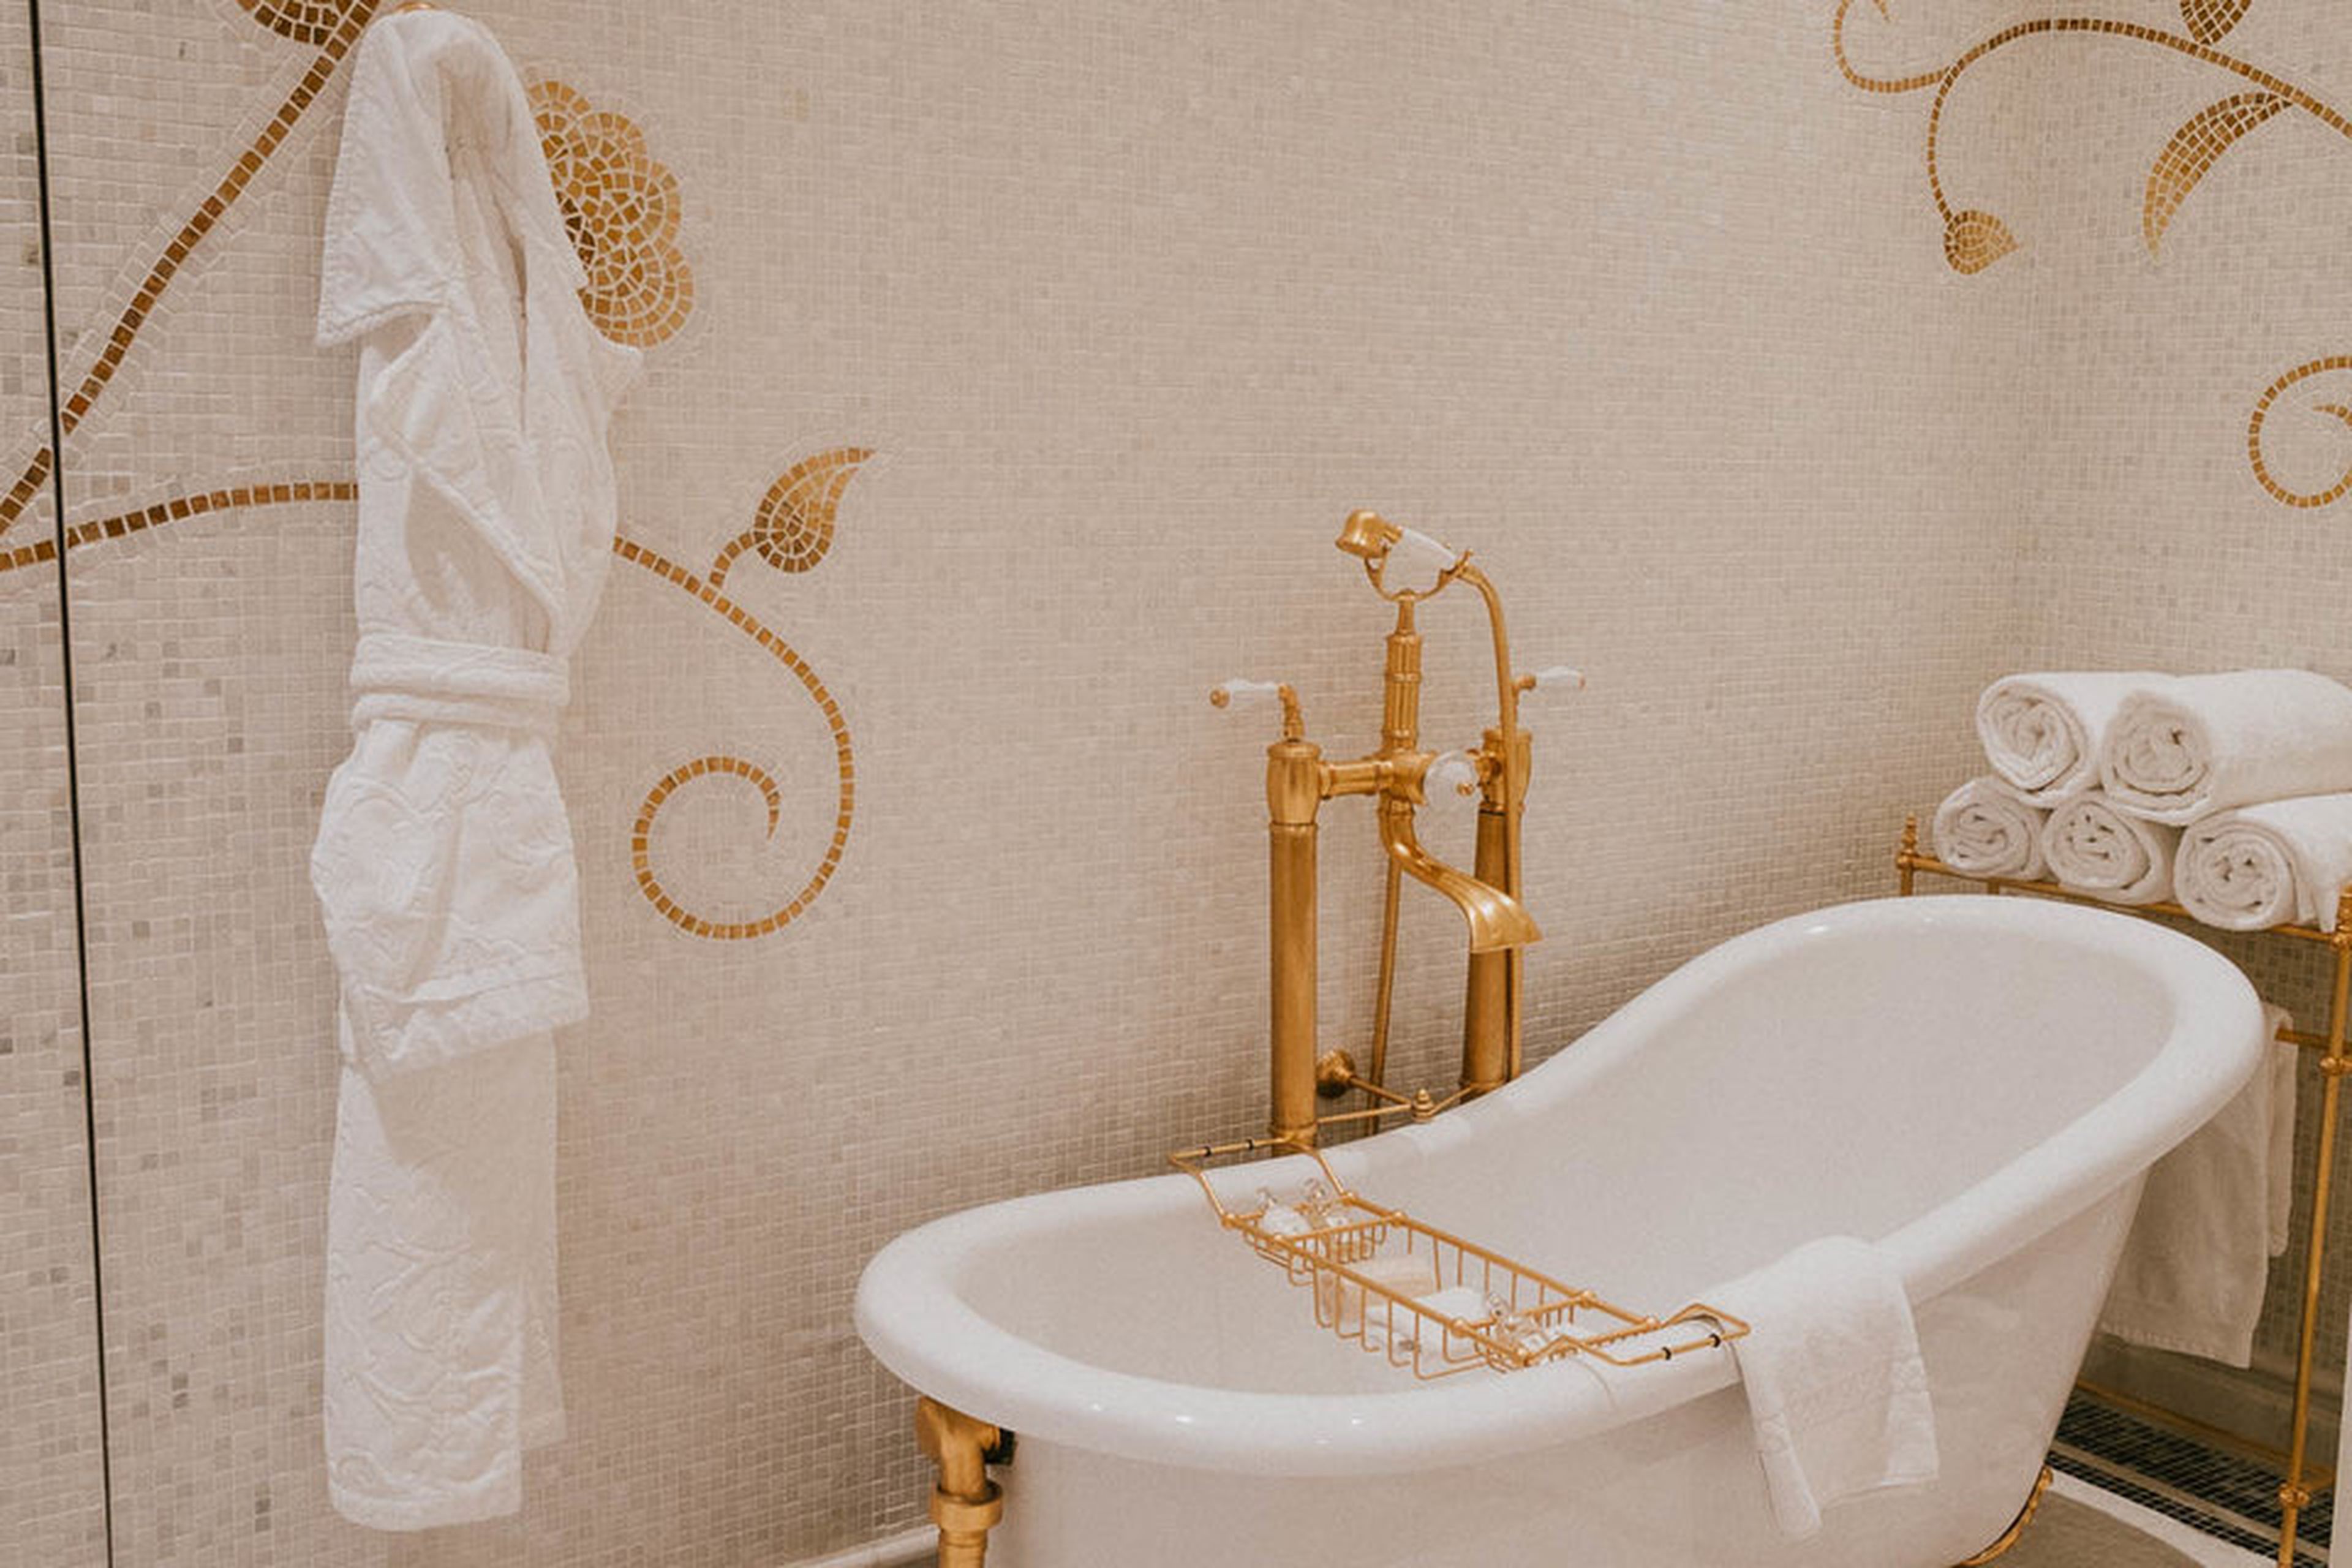 Una bañera inclinada con accesorios dorados. Disfrutarás más de esta foto si te imaginas que está llena de burbujas y un patito de goma o dos.